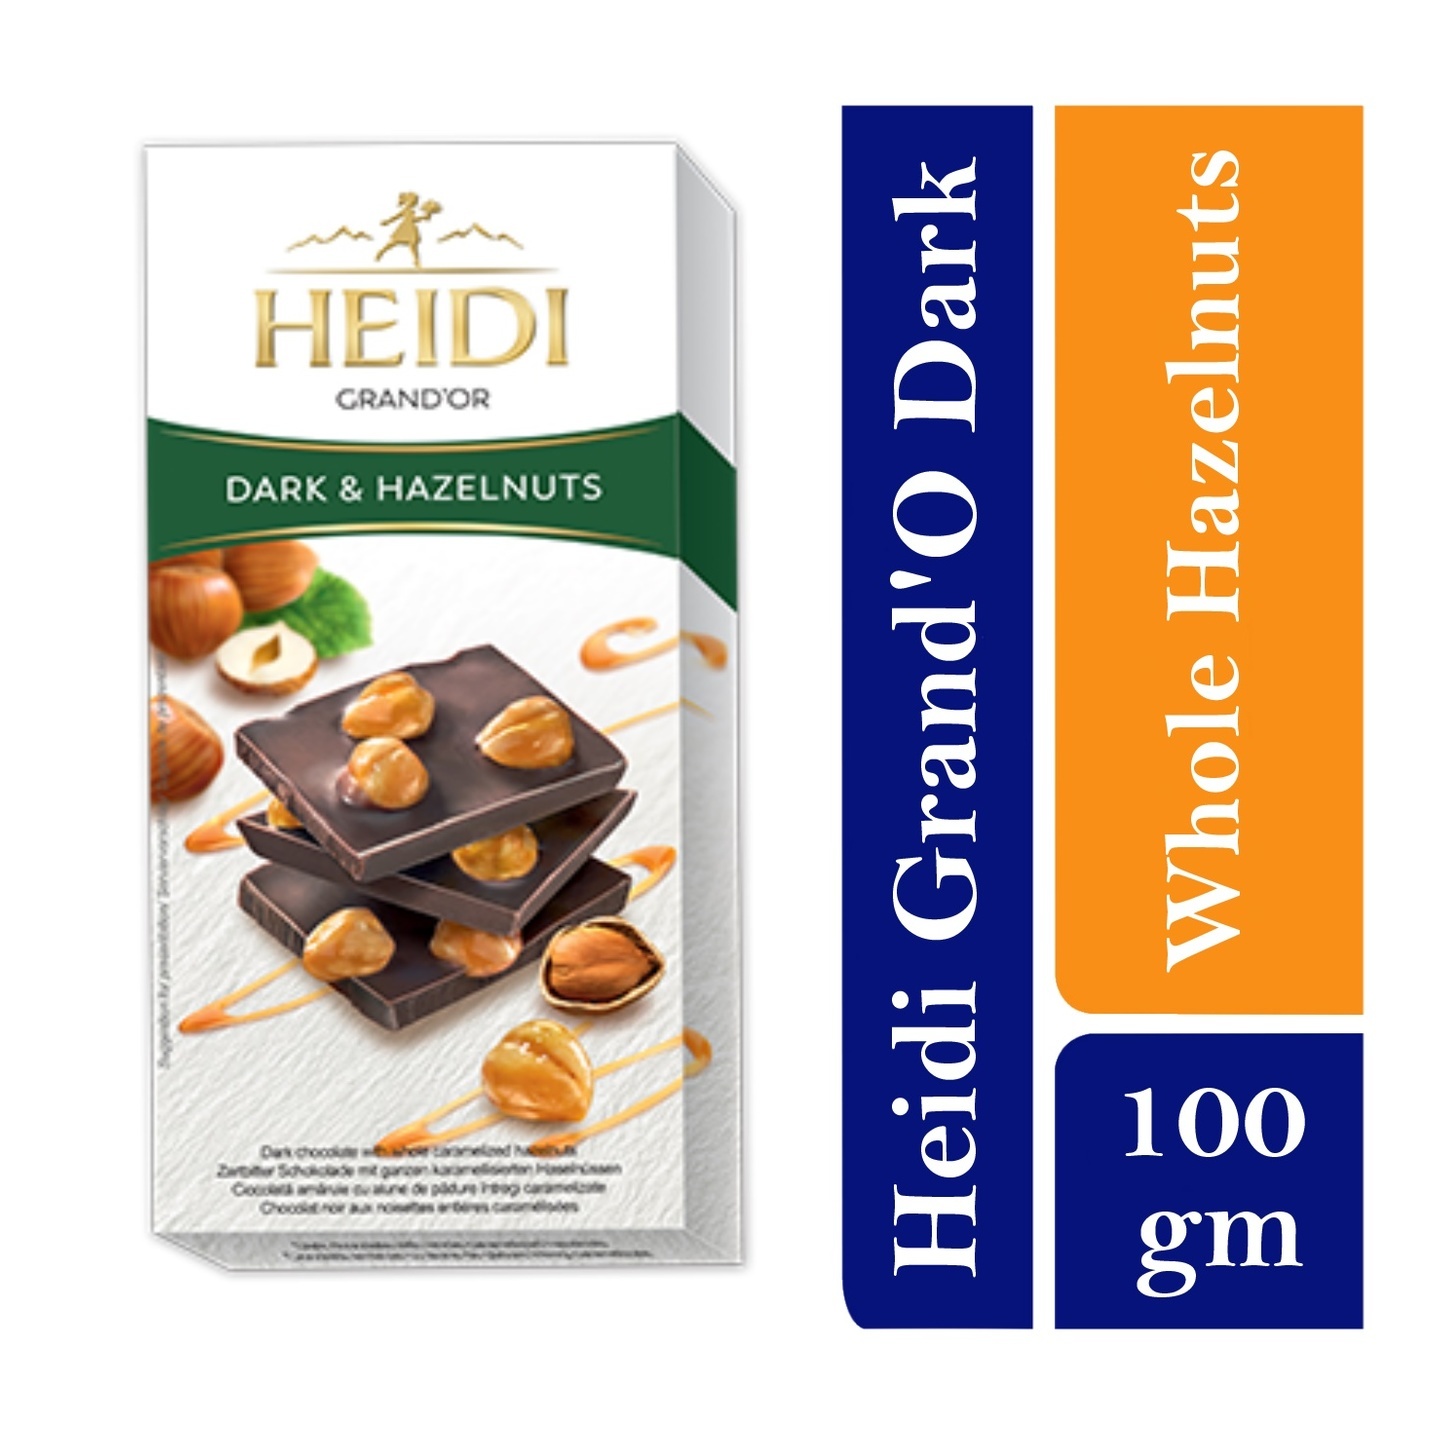 Heidi Grand Or  Dark Chocolate with whole caramelized Hazelnuts